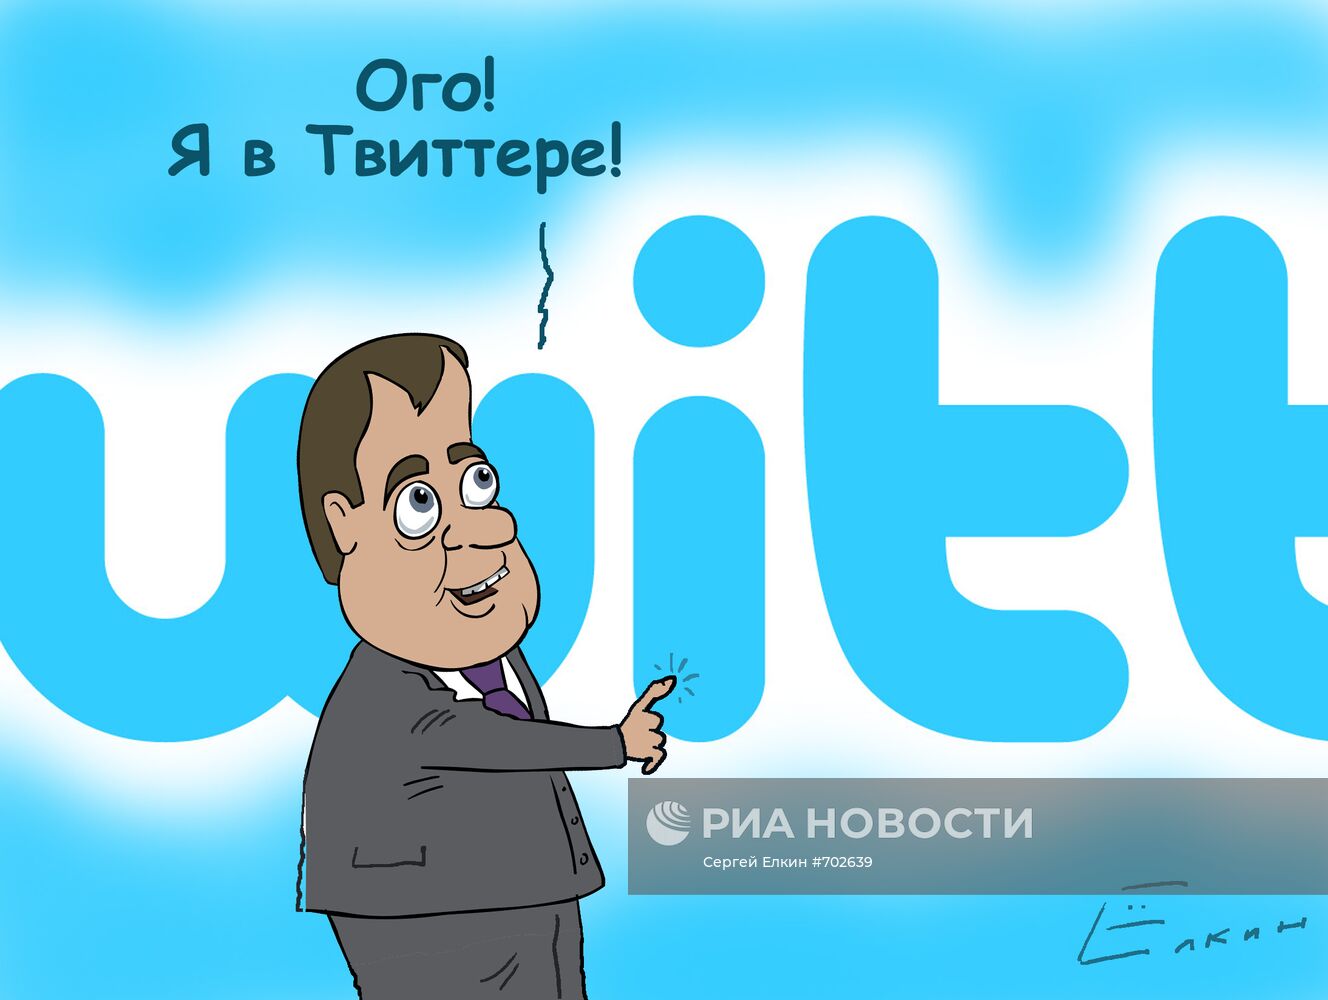 "Всем привет! Я в "Твиттере" – Медведев завел свой микроблог